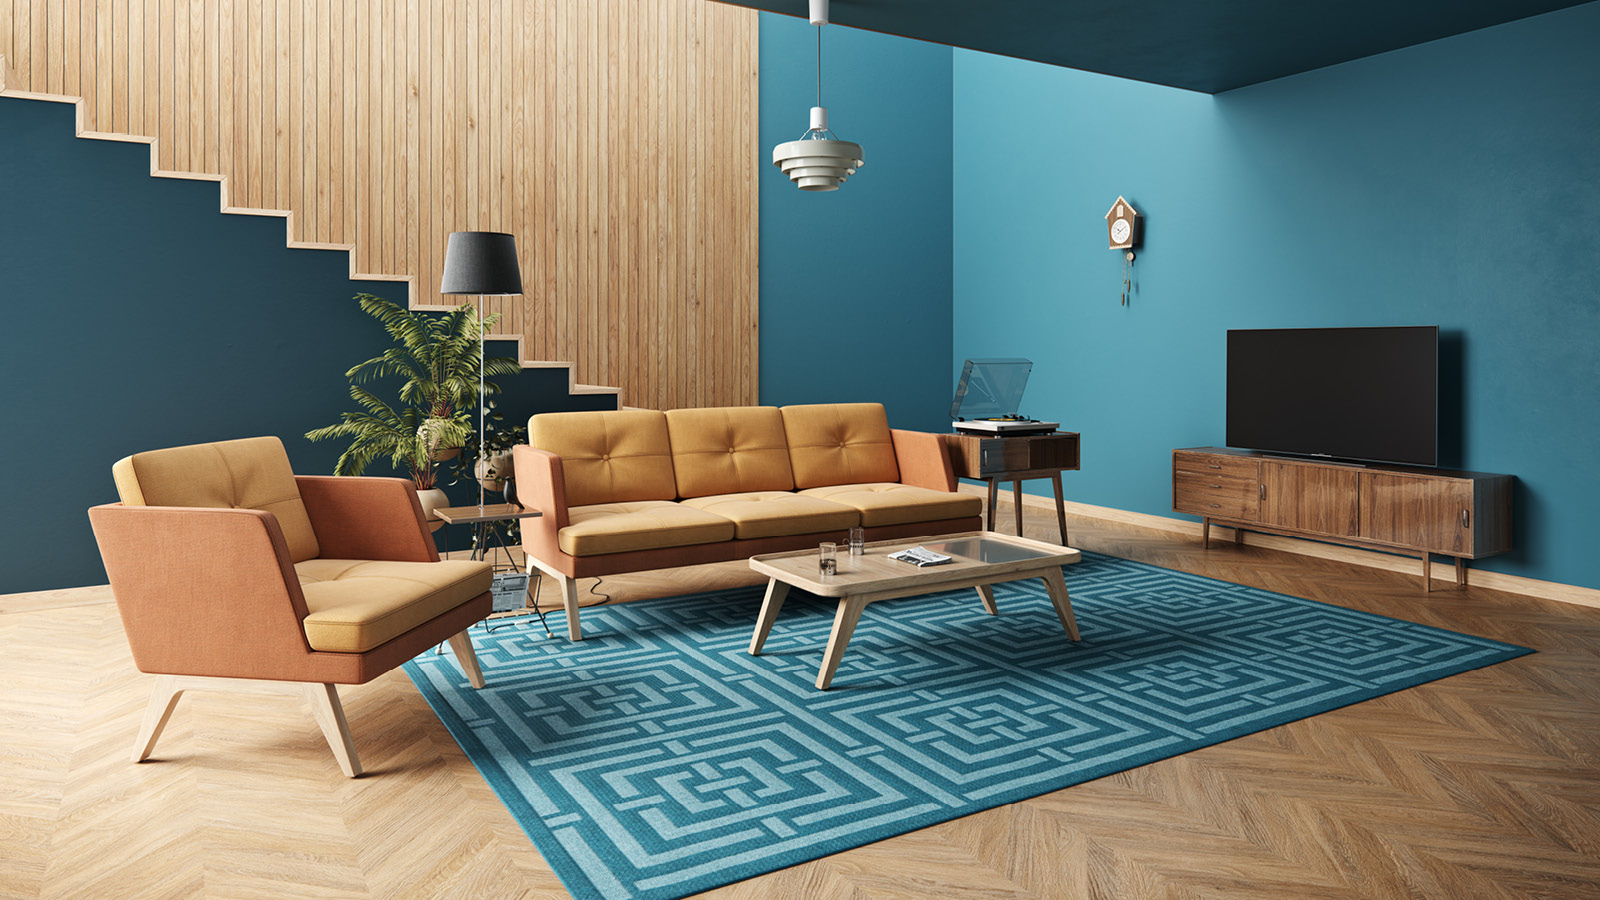 Domowy salon wyposażony w 3-osobową sofę oraz fotel w odcieniach żółto-pomarańczowych. Niebieski dywan uzupełnia aranżację.